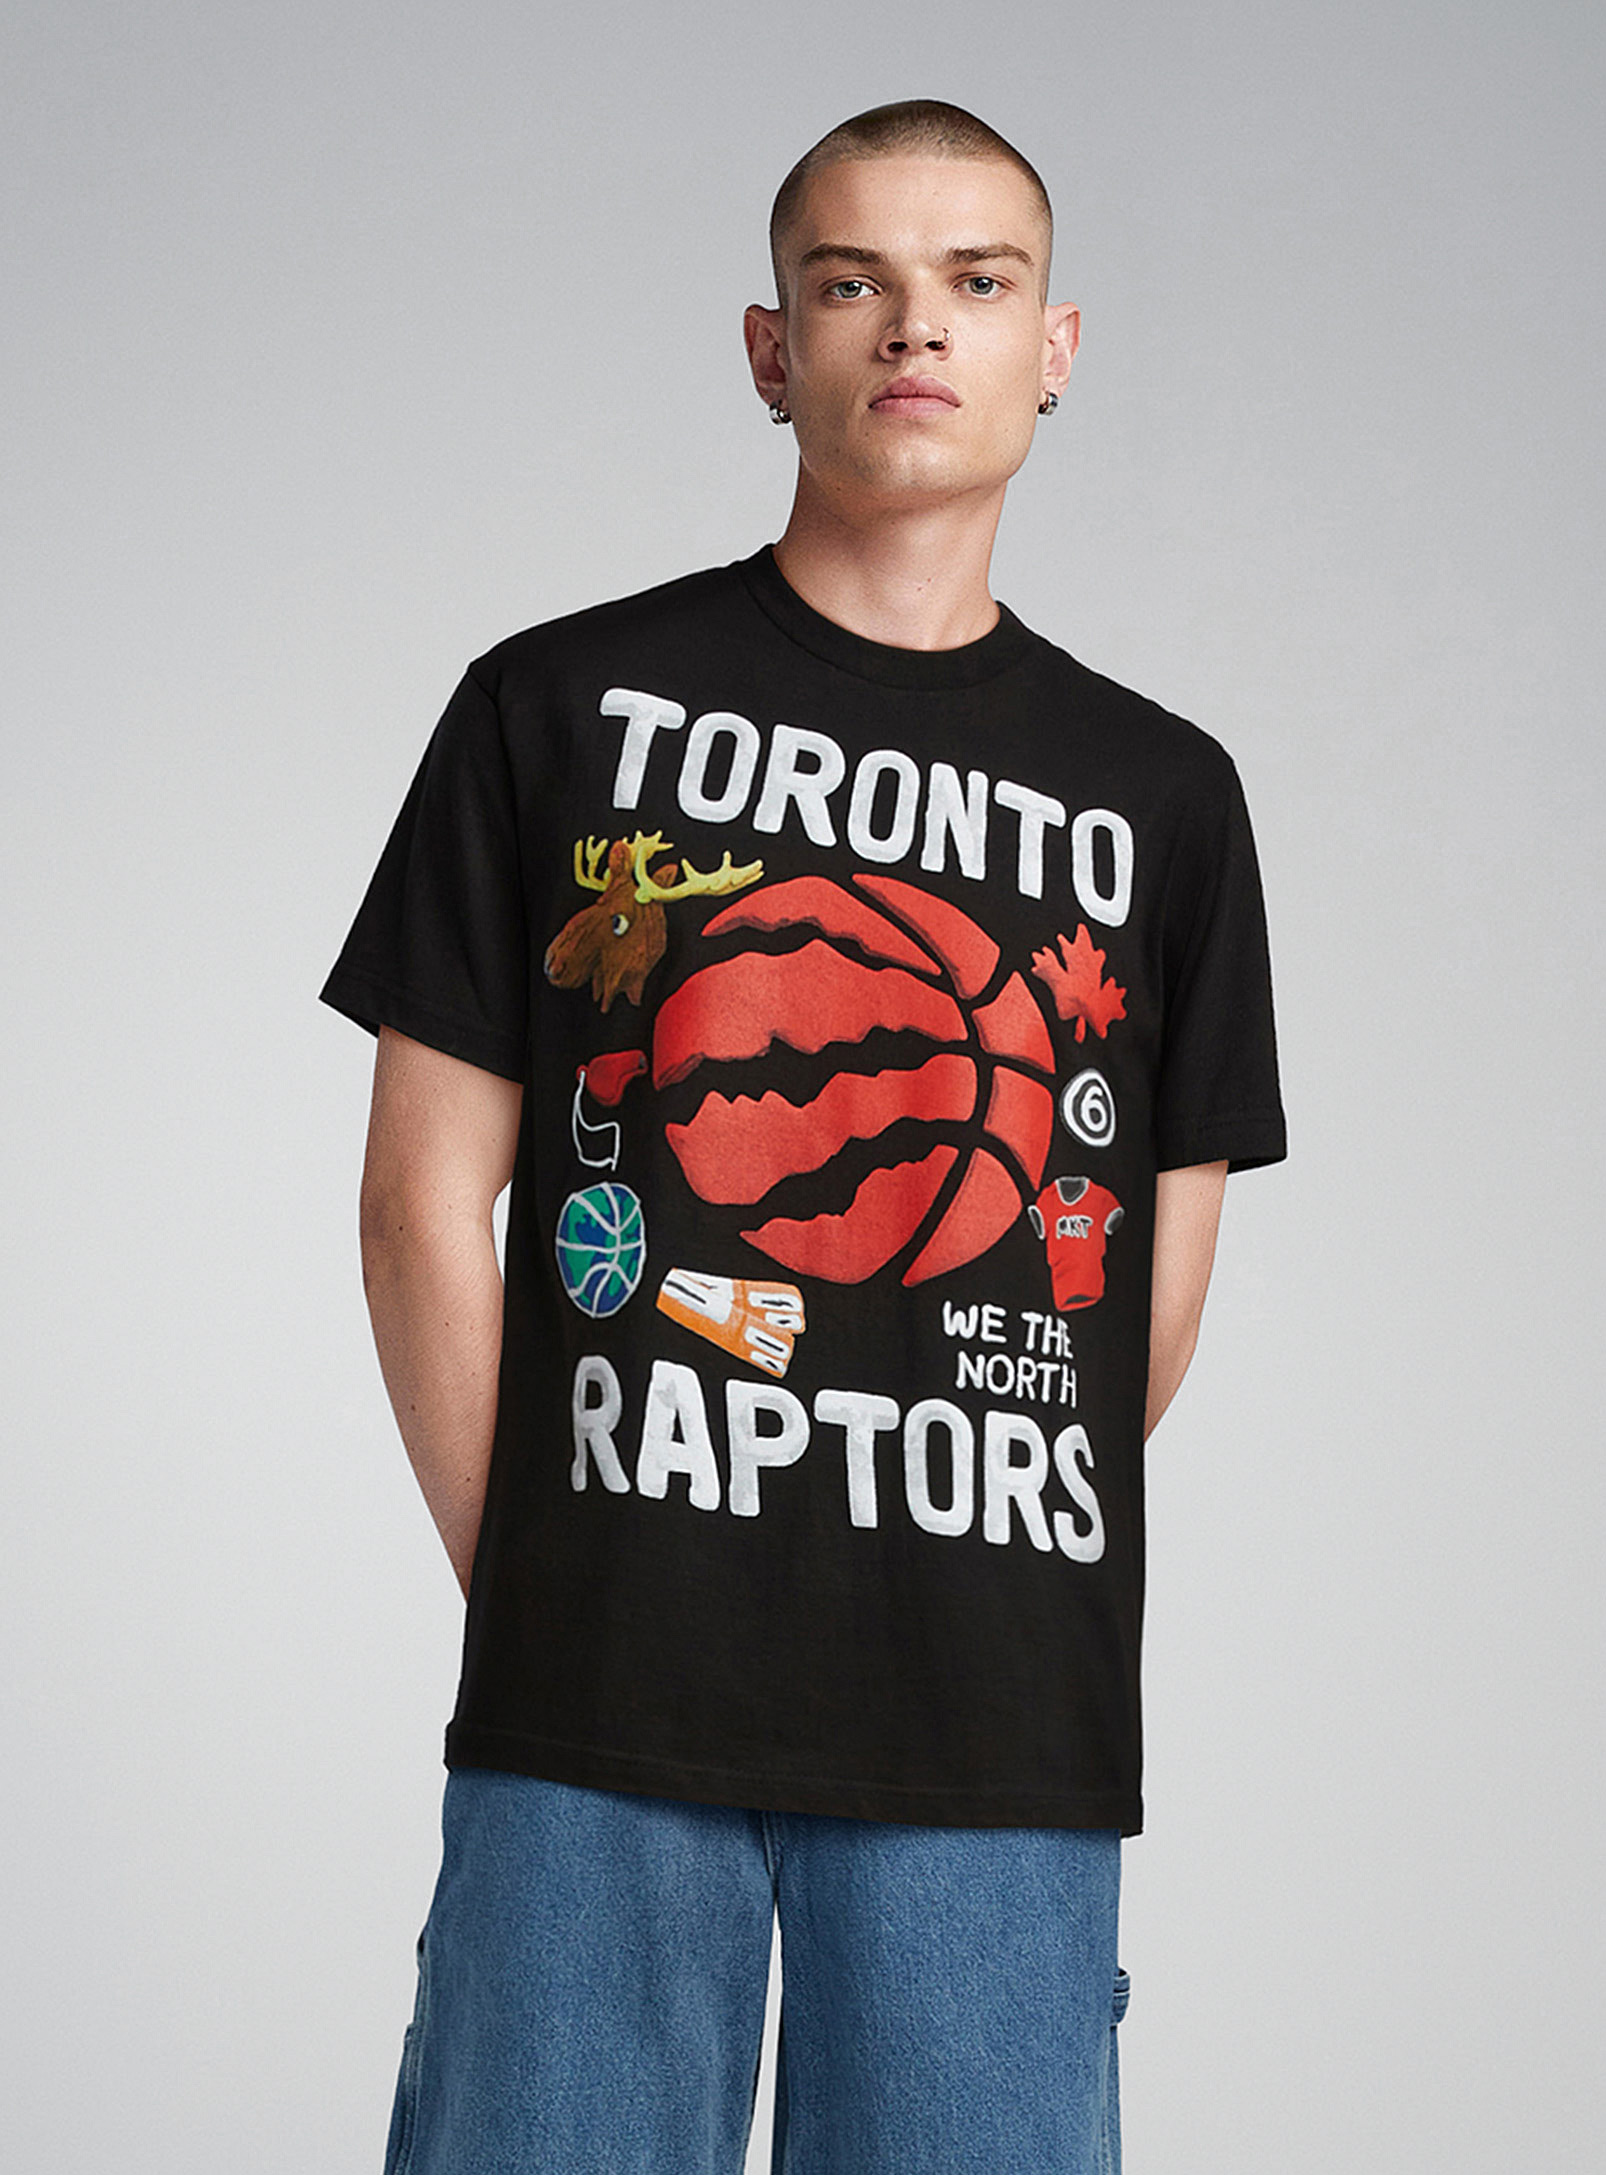 Market - Le t-shirt Raptors